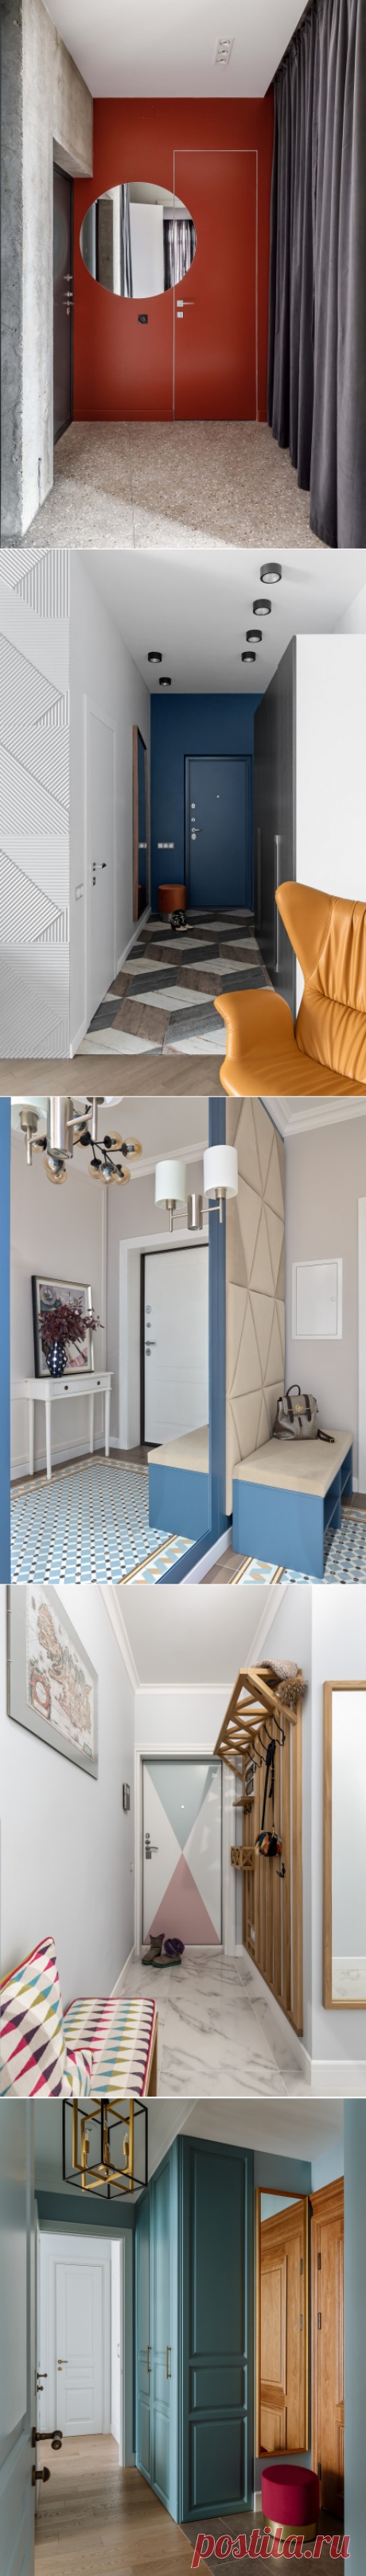 Дизайн узкой прихожей в квартире, идеи для ремонта в прихожей — фото реальных интерьеров | Houzz Россия